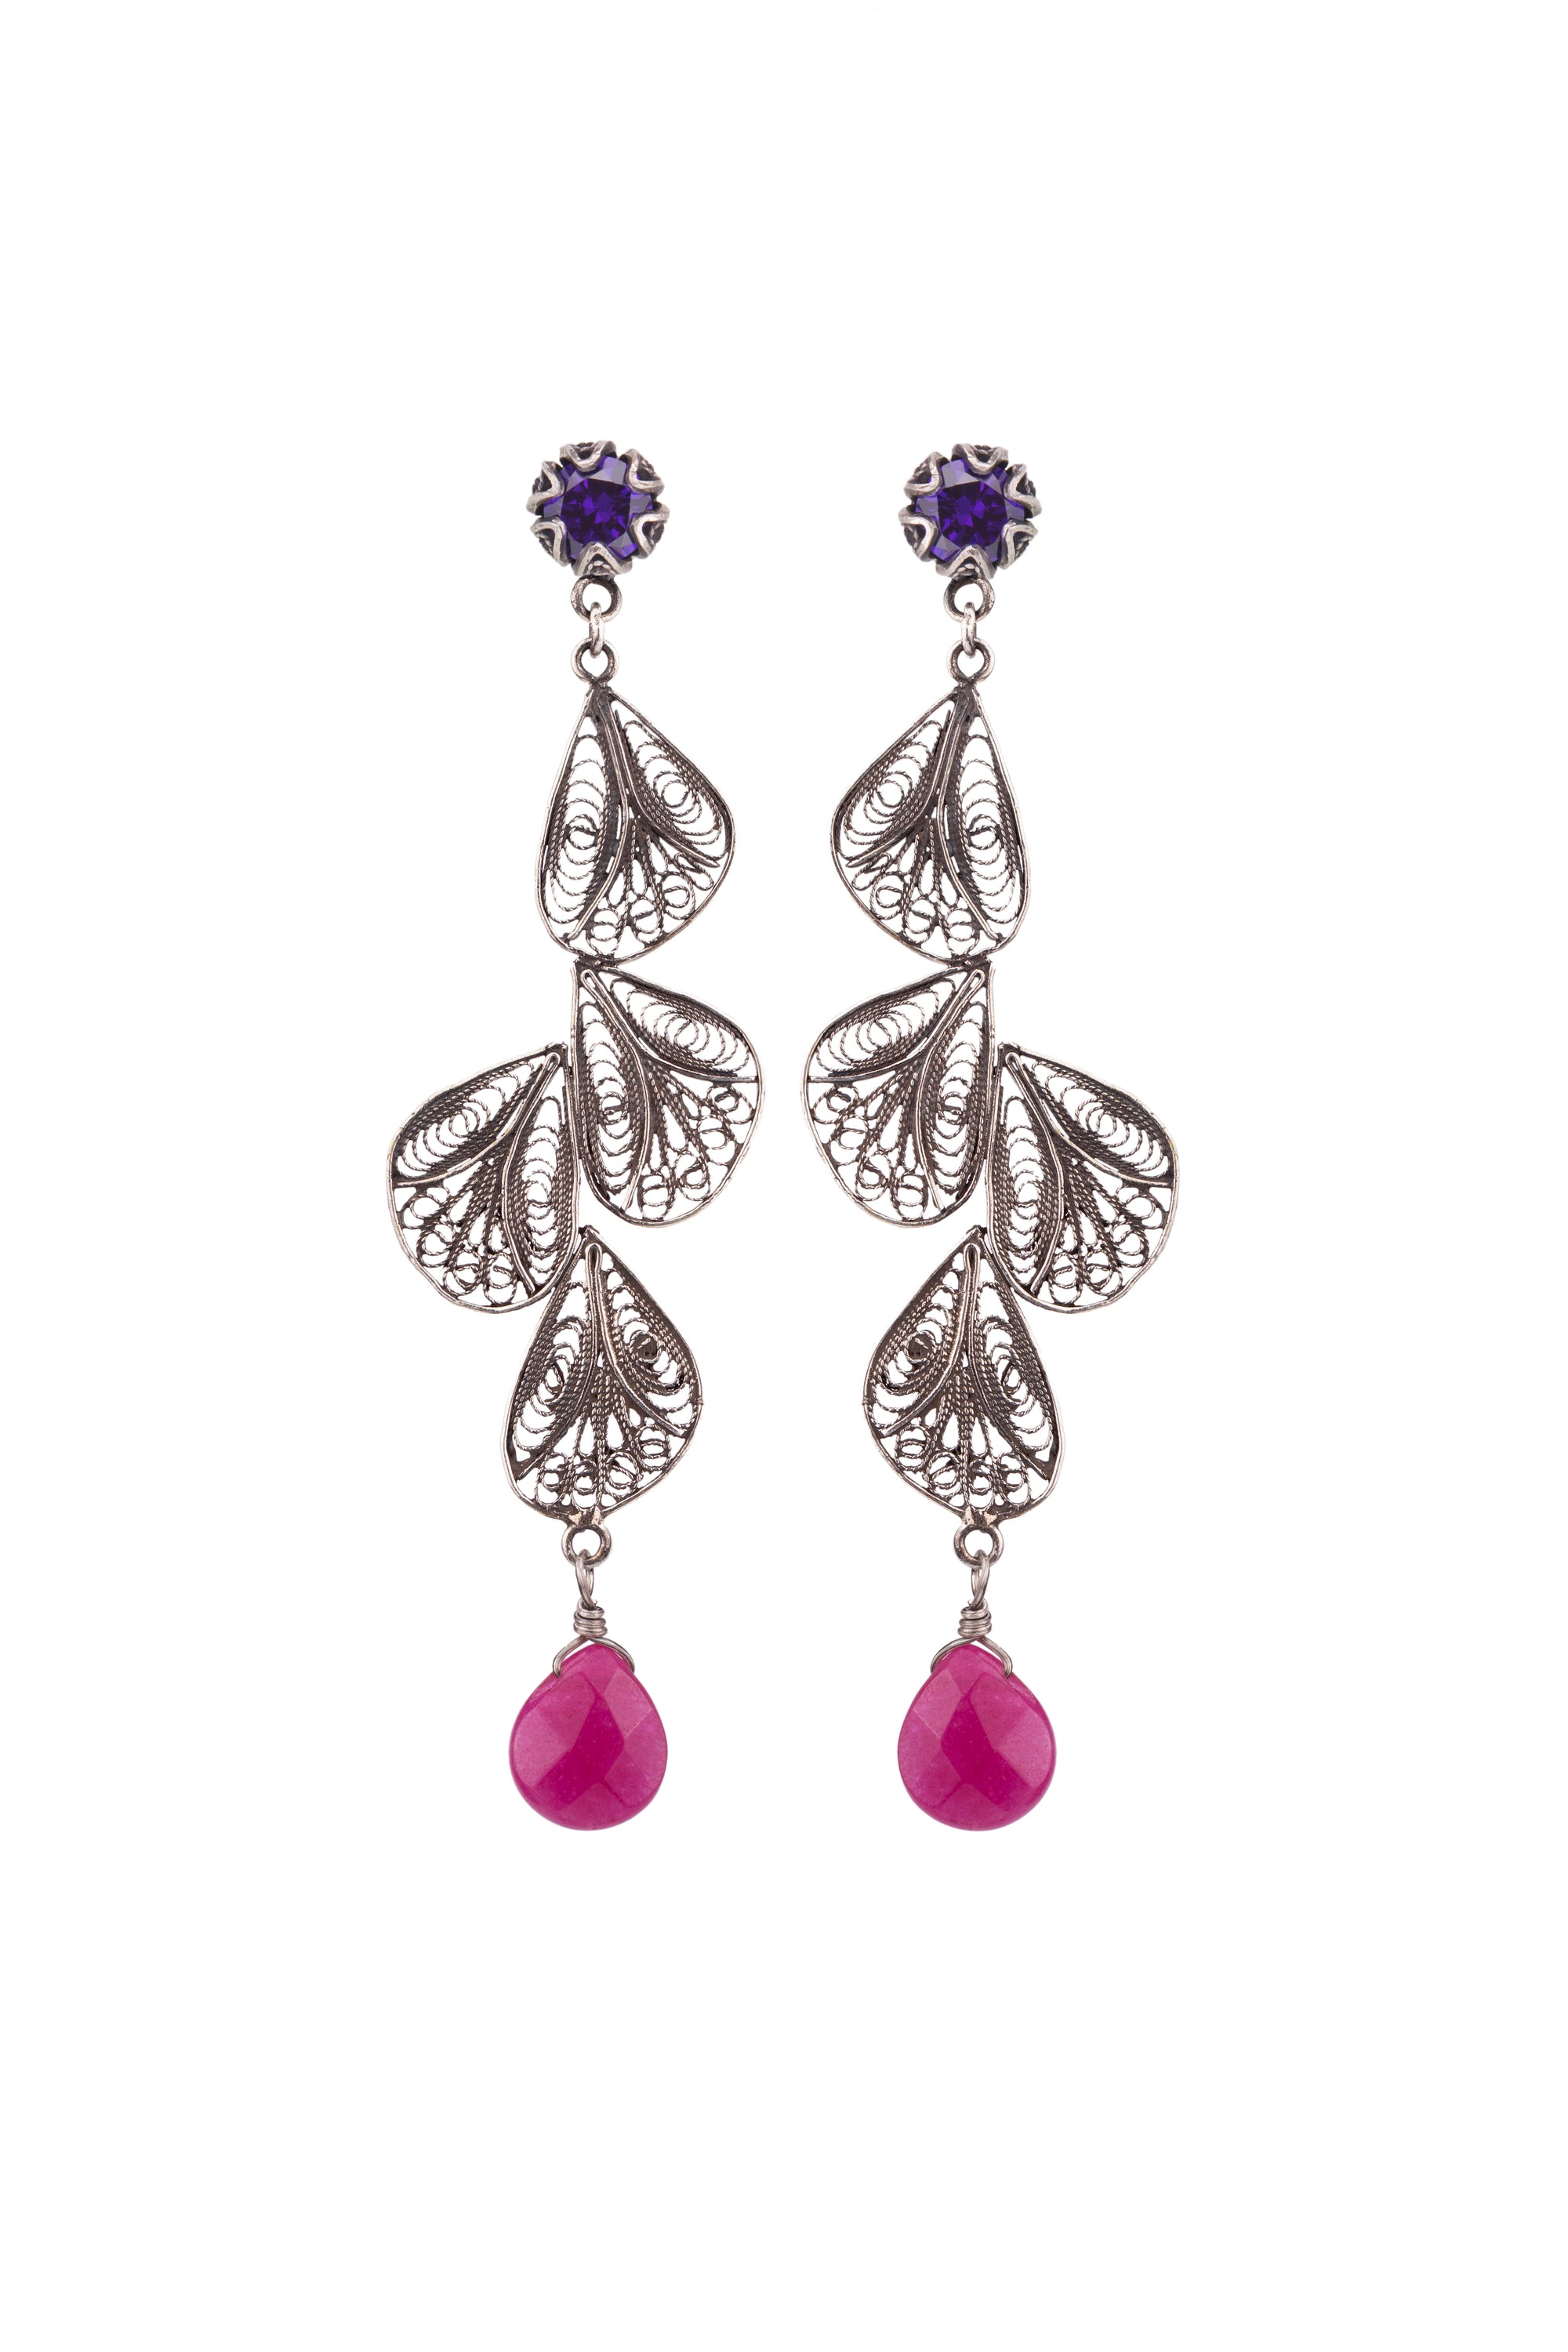 Boucles d'oreilles pétales de fleurs en filigrane d'argent - CZ violet / jade framboise ✿ 